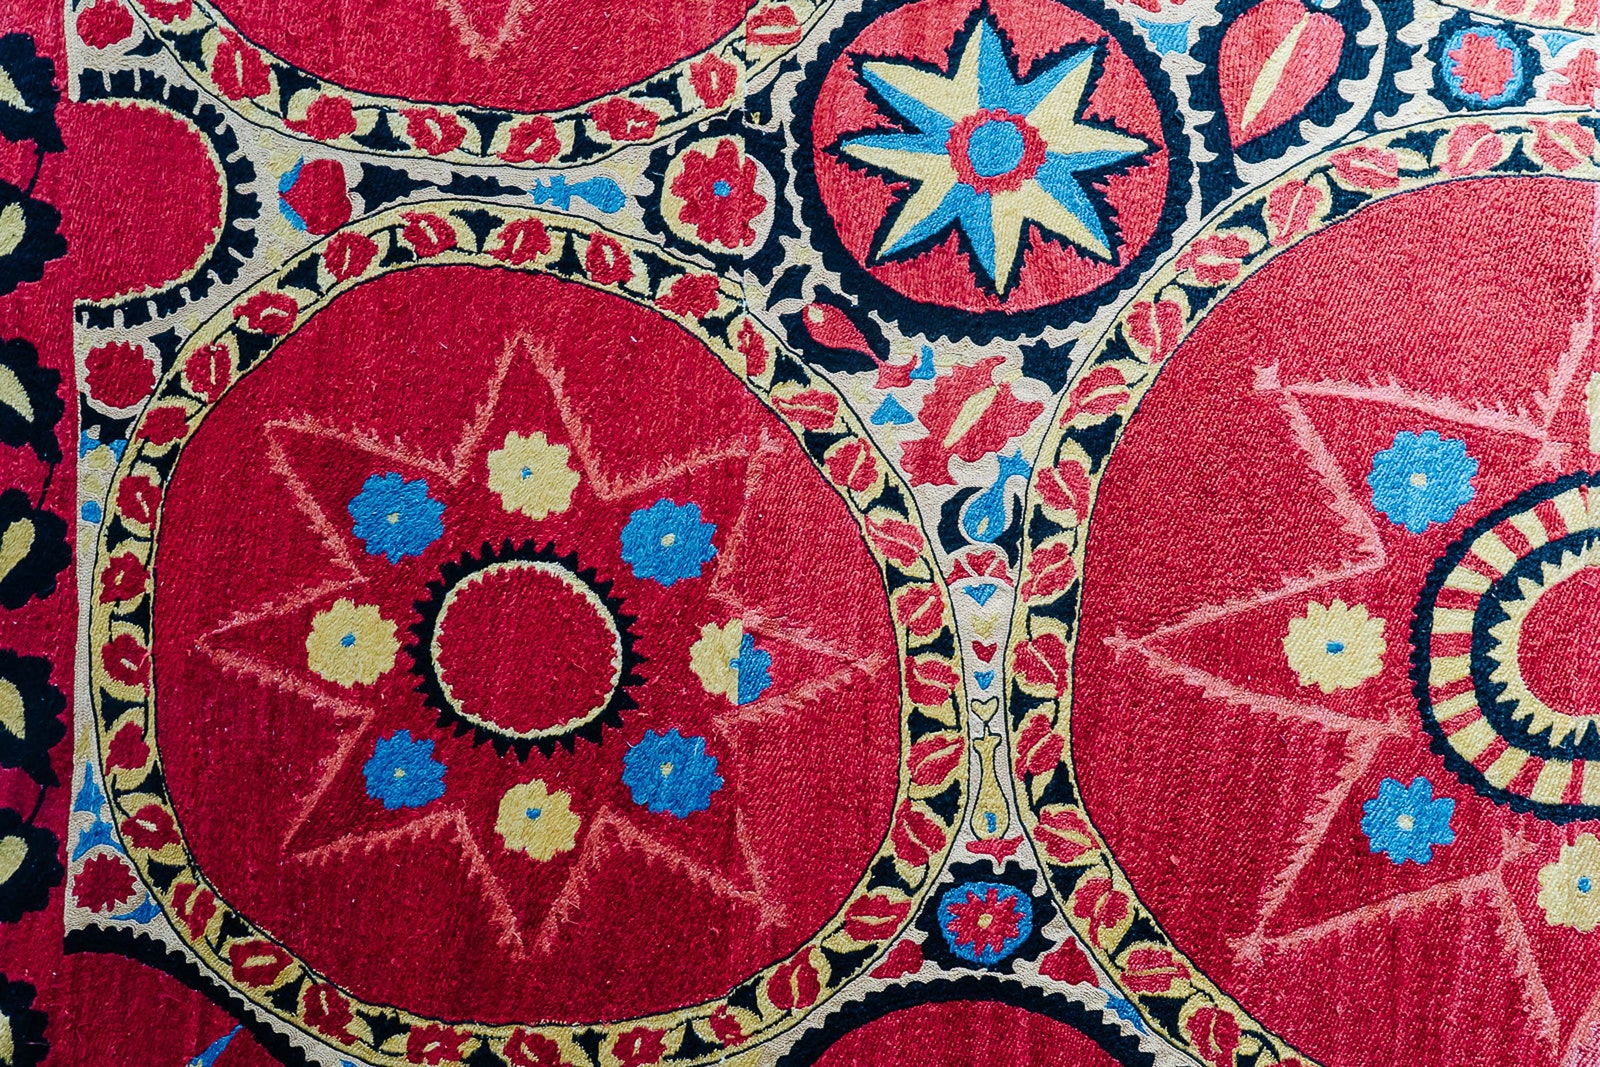 Хорошо забытое старое новая жизнь традиционных узбекских ремесел